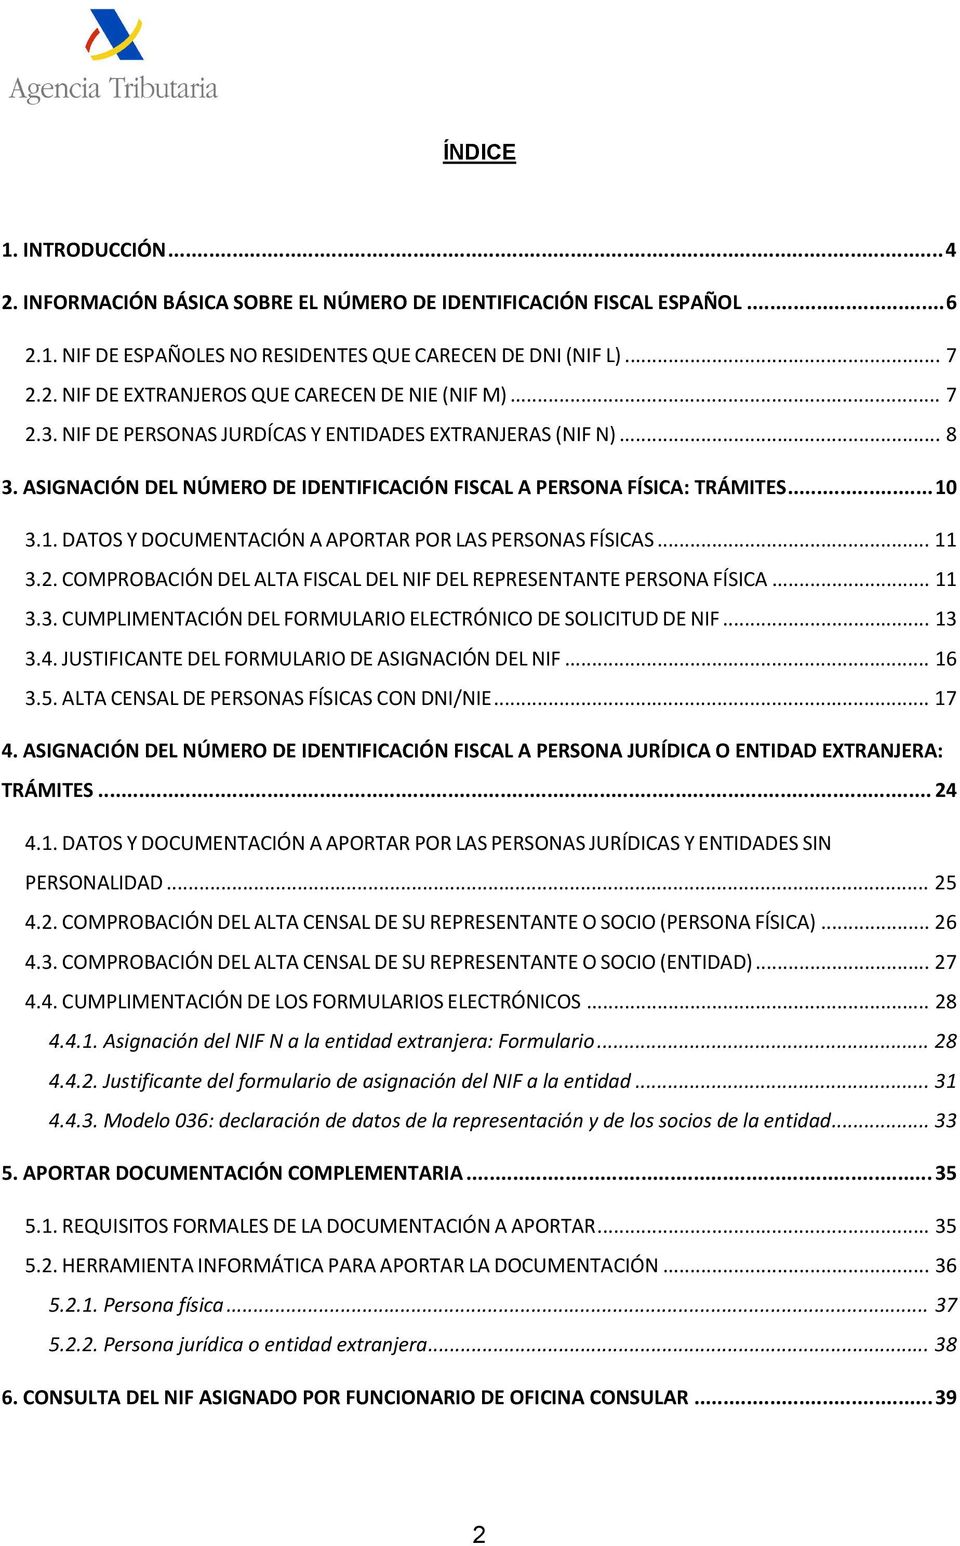 3.1. DATOS Y DOCUMENTACIÓN A APORTAR POR LAS PERSONAS FÍSICAS... 11 3.2. COMPROBACIÓN DEL ALTA FISCAL DEL NIF DEL REPRESENTANTE PERSONA FÍSICA... 11 3.3. CUMPLIMENTACIÓN DEL FORMULARIO ELECTRÓNICO DE SOLICITUD DE NIF.